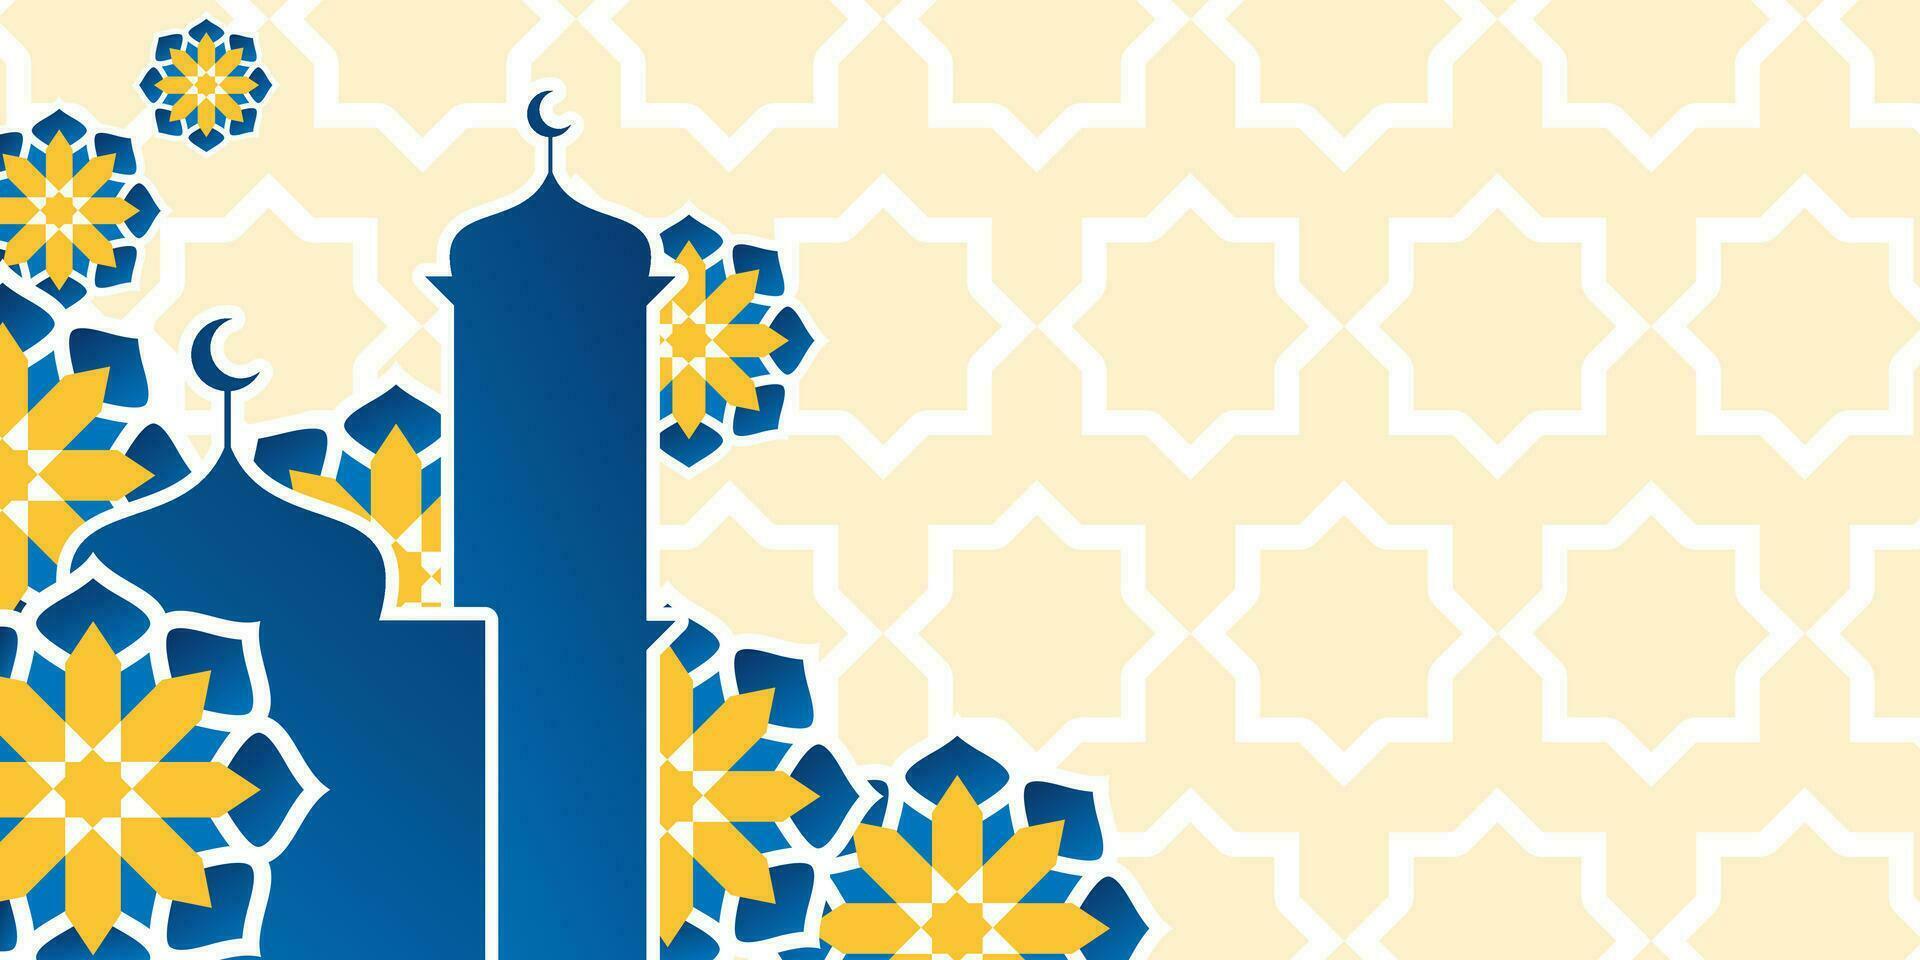 islámico fondo, con hermosa azul y amarillo mandala adornos vector modelo para bandera, póster, social medios de comunicación, saludo tarjeta islámico vacaciones, ramadán, eid al fitr, eid al adha, mawlid